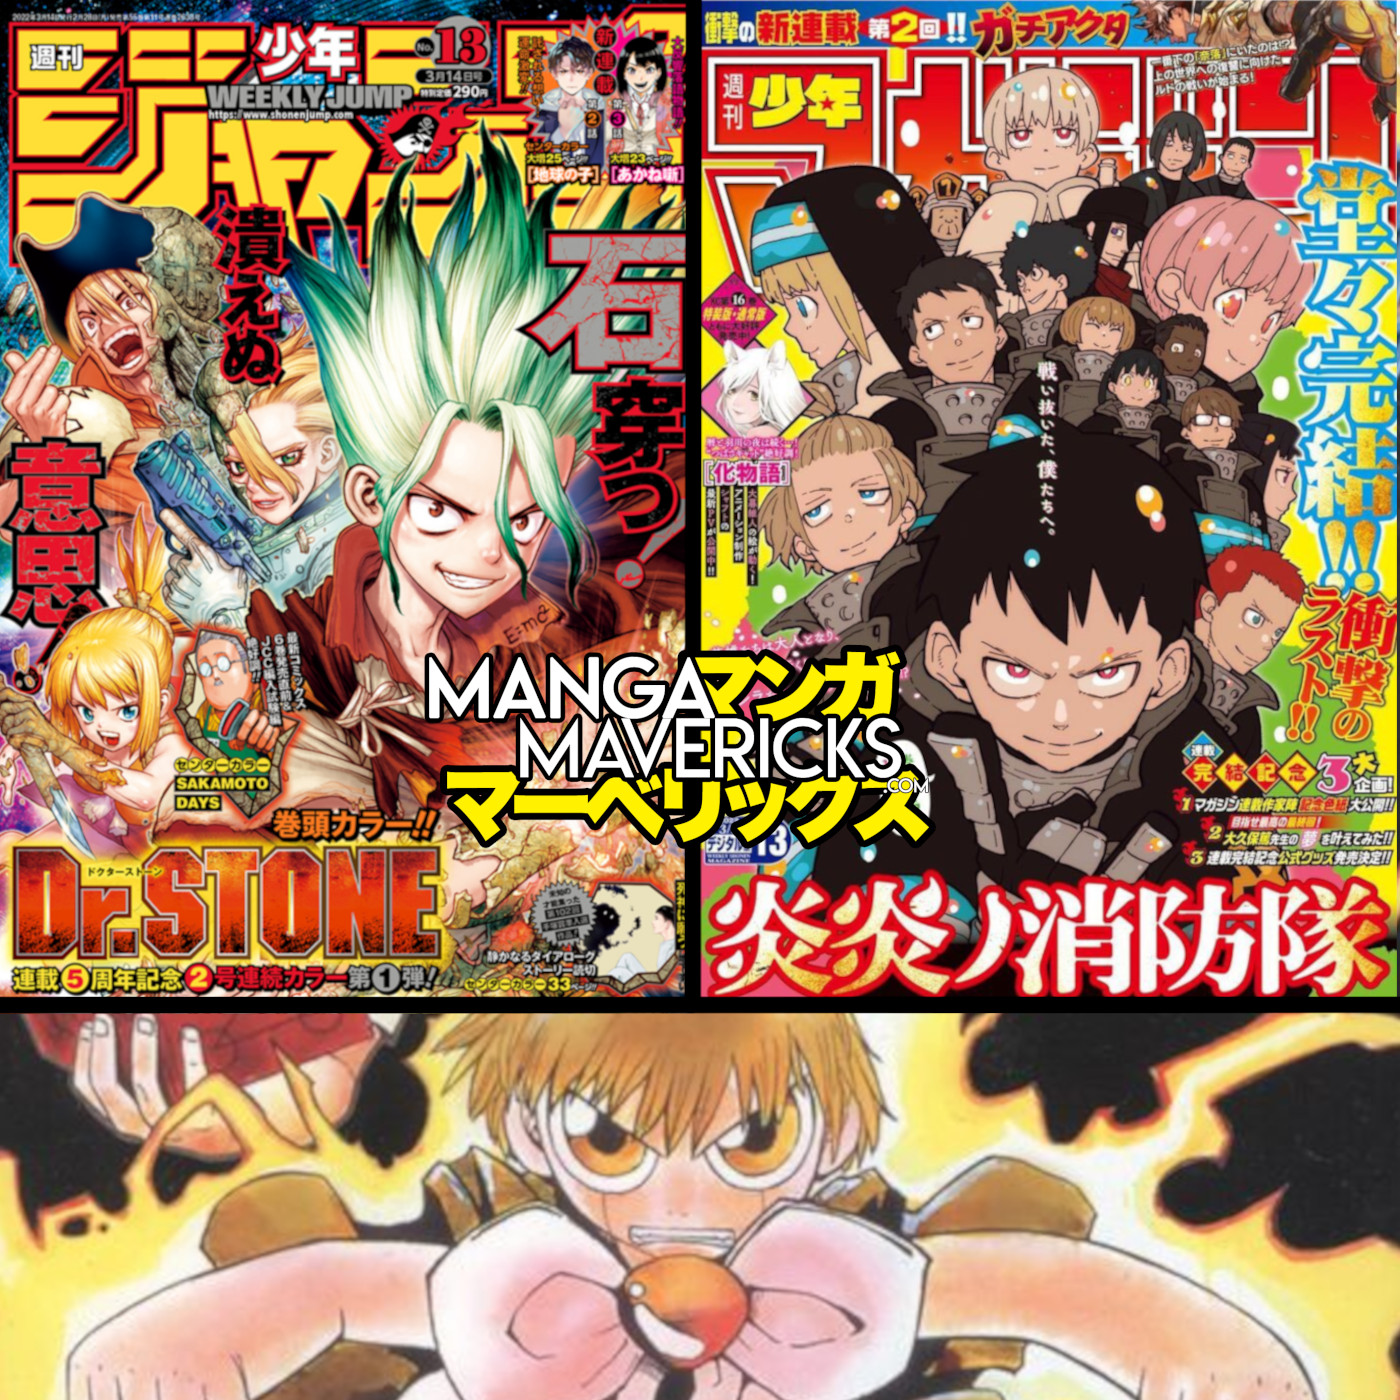 Seven Seas Licenses SPRIGGAN, Cats and Sugar Bowls, and More Manga